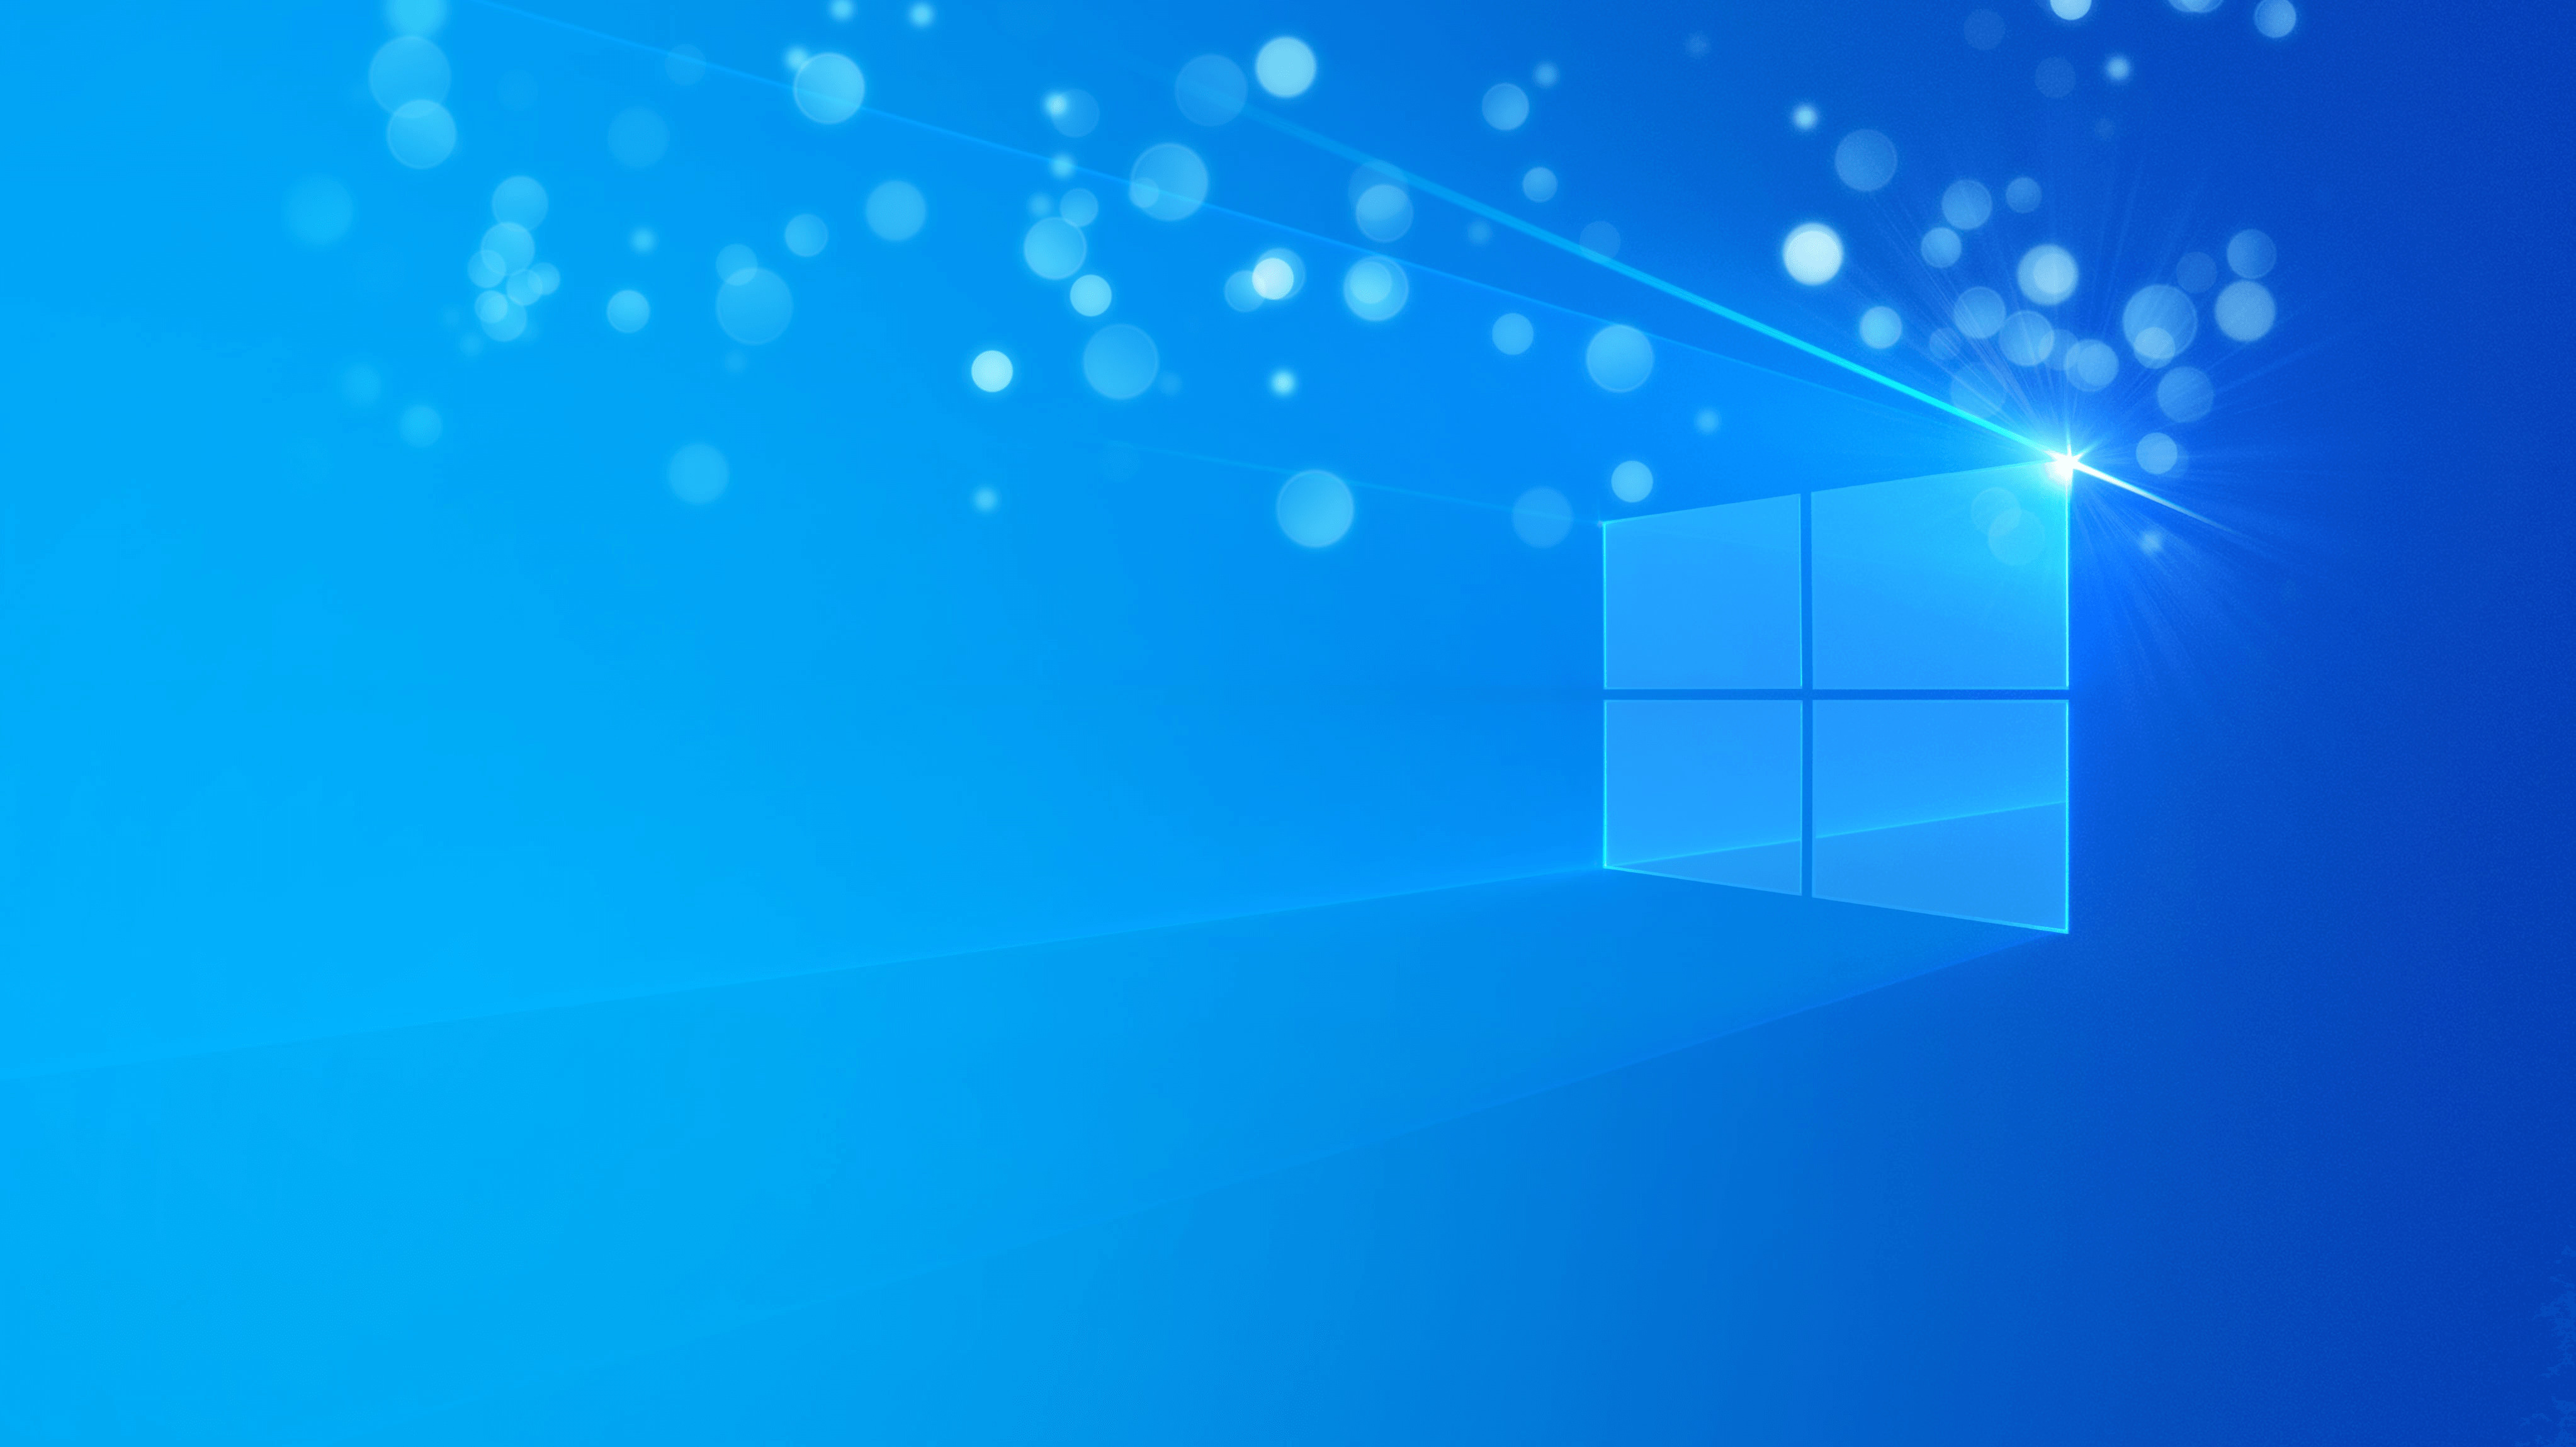 Bạn muốn tìm kiếm hình nền đẹp cho màn hình Windows 10 của mình? Hãy xem ngay hình ảnh này với các tùy chọn phù hợp cho nhiều loại máy tính và thiết bị khác nhau. Với sự đa dạng về màu sắc, bố cục và độ phân giải, bạn sẽ dễ dàng tìm được hình nền yêu thích của mình.